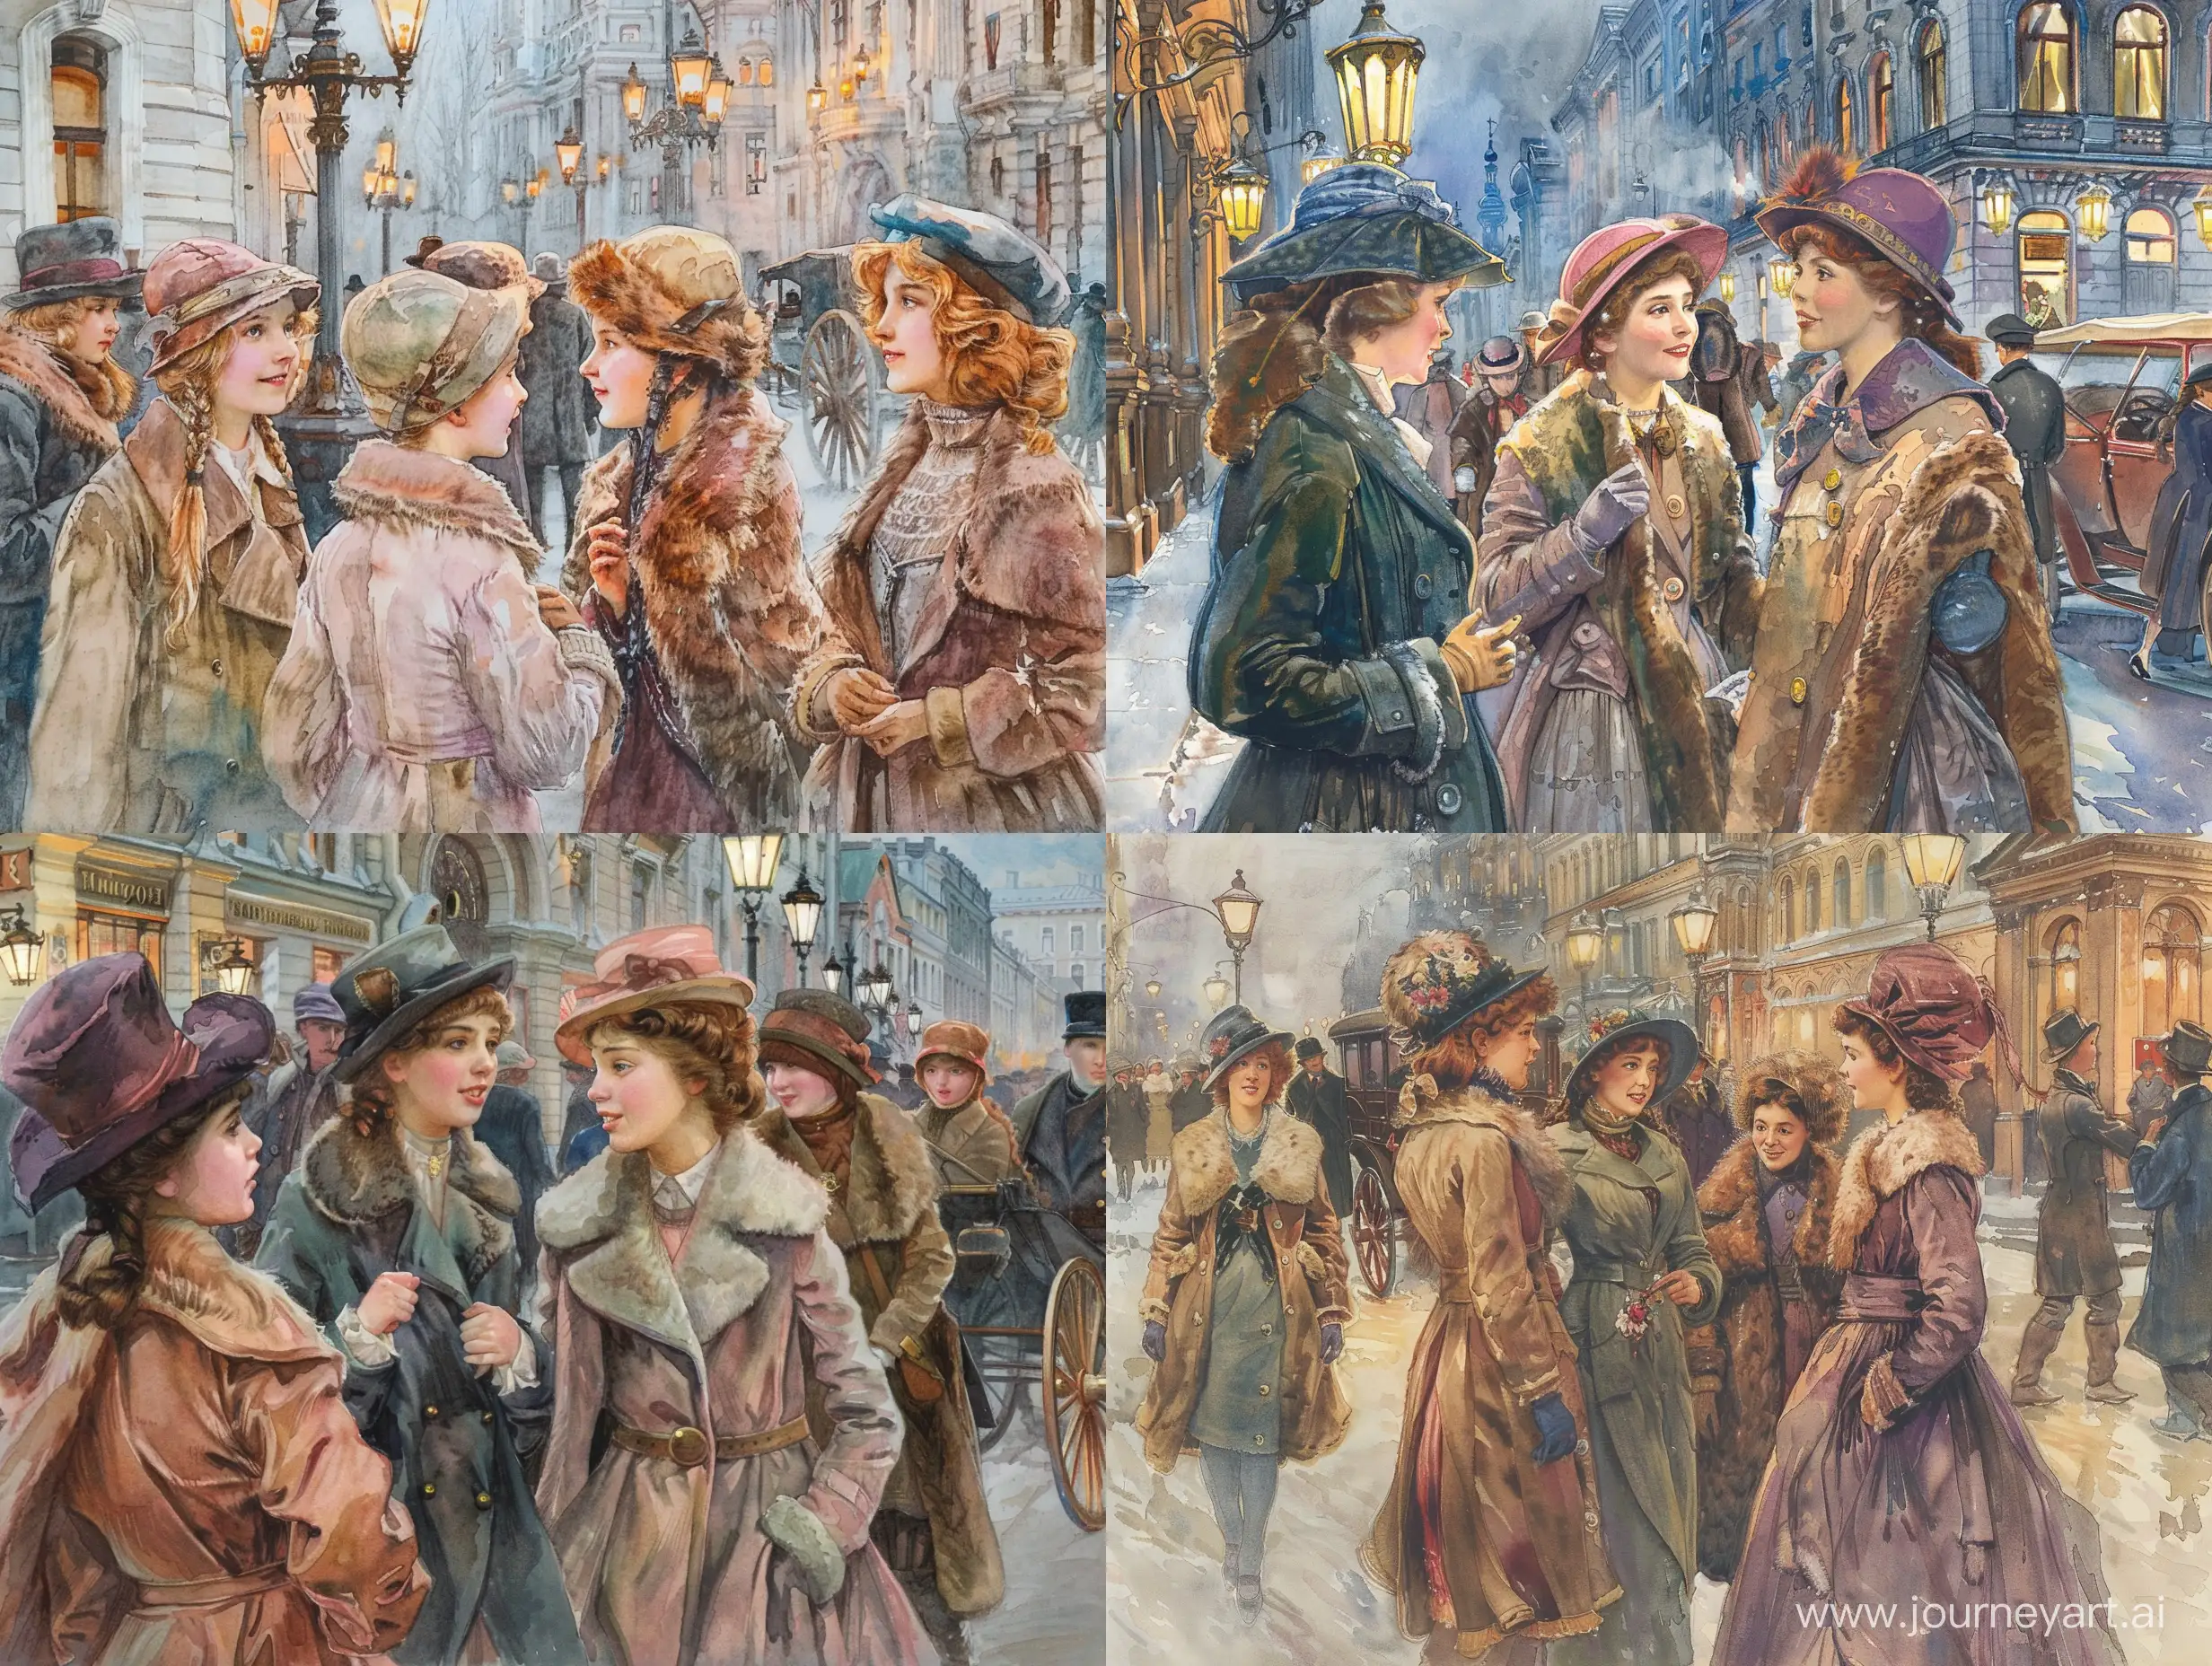 Группа молодых модных девушек жительниц Петербурга гуляют по улице города.На улице Санкт-Петербурга с фонарями, прохожими, магазинами, каретами и извозчиками.Девушки общаются друг с другом и им весело.При общении они смотрят друг другу в глаза.Девушки одеты тепло и красиво по моде 1910 года.На них тёплые шапочки и шубки с мехом или пальто, всёсочетается по цвету и стилю.Акварель в стиле и цвете John Everett Millais.Действие происходит на улице Санкт-Петербурга 1910 года.